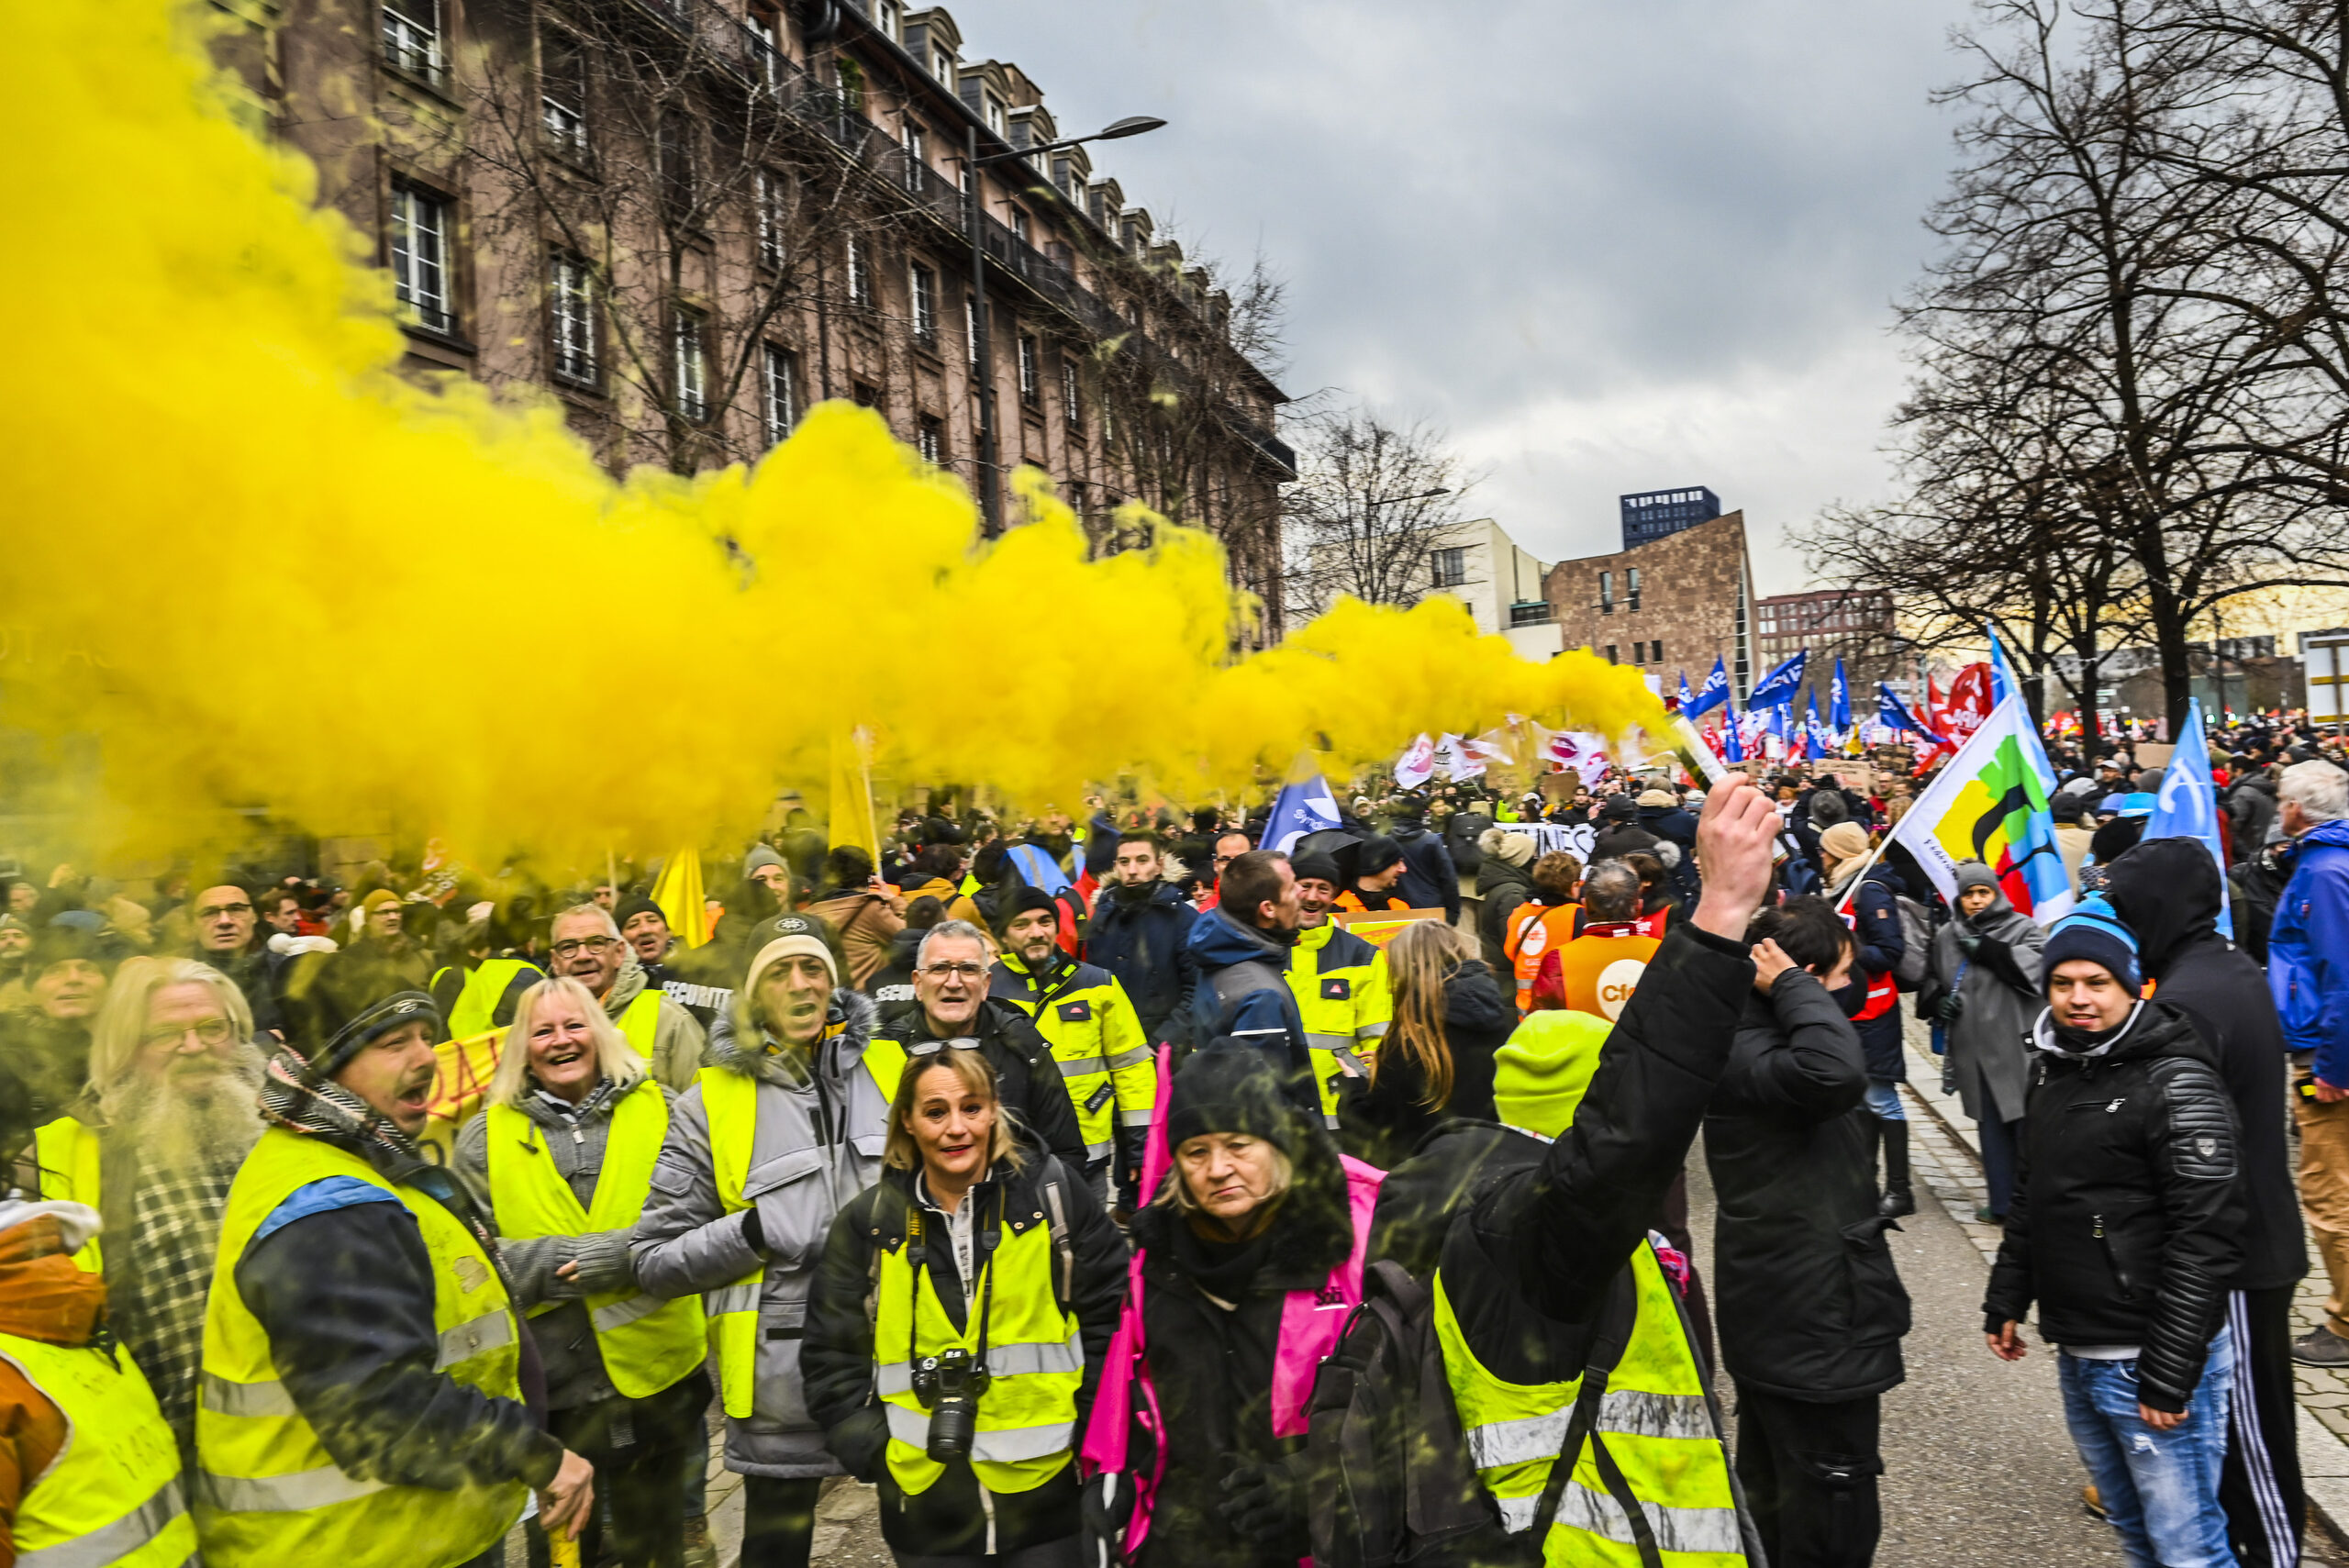 « On crèvera pas au boulot » : manifestation des Gilets jaunes samedi pour la retraite à 60 ans